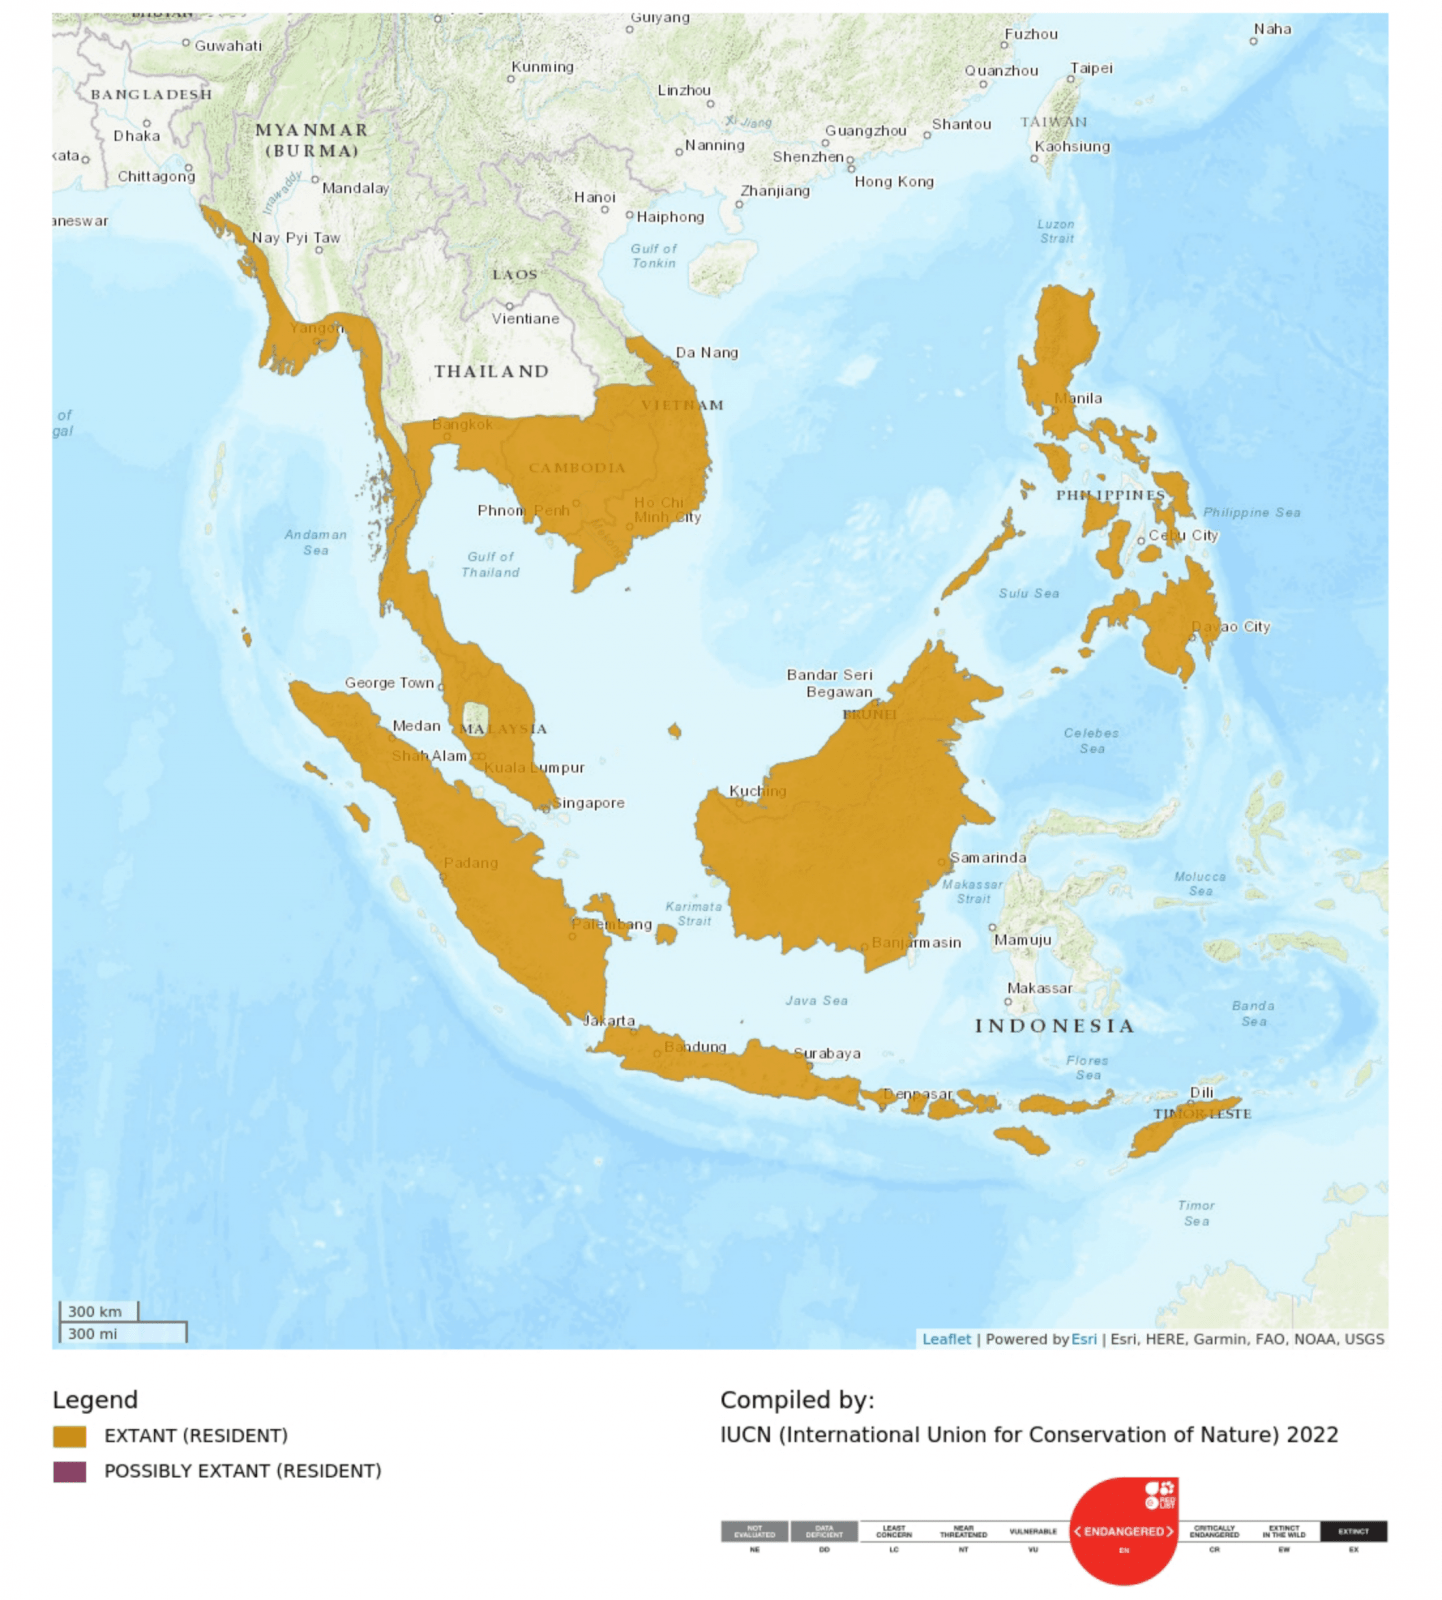 Peta persebaran monyet ekor panjang (Macaca fascicularis) di Asia Tenggara. Di Indonesia, monyet bisa ditemukan di Sumatera, Kalimantan, Jawa, hingga Nusa Tenggara. | Sumber: IUCN